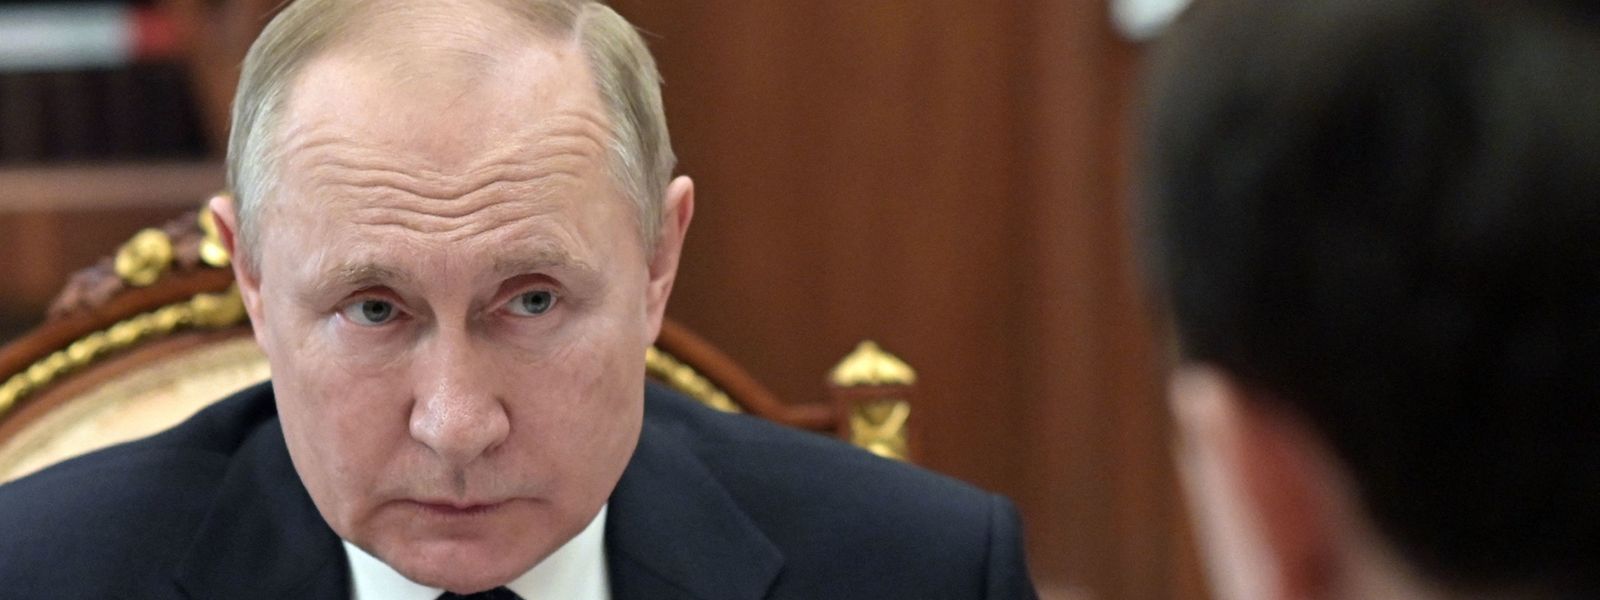 Schlechte Nachrichten für Putin: Russland steht vor der größten Wirtschaftsflaute seit fast drei Jahrzenten.